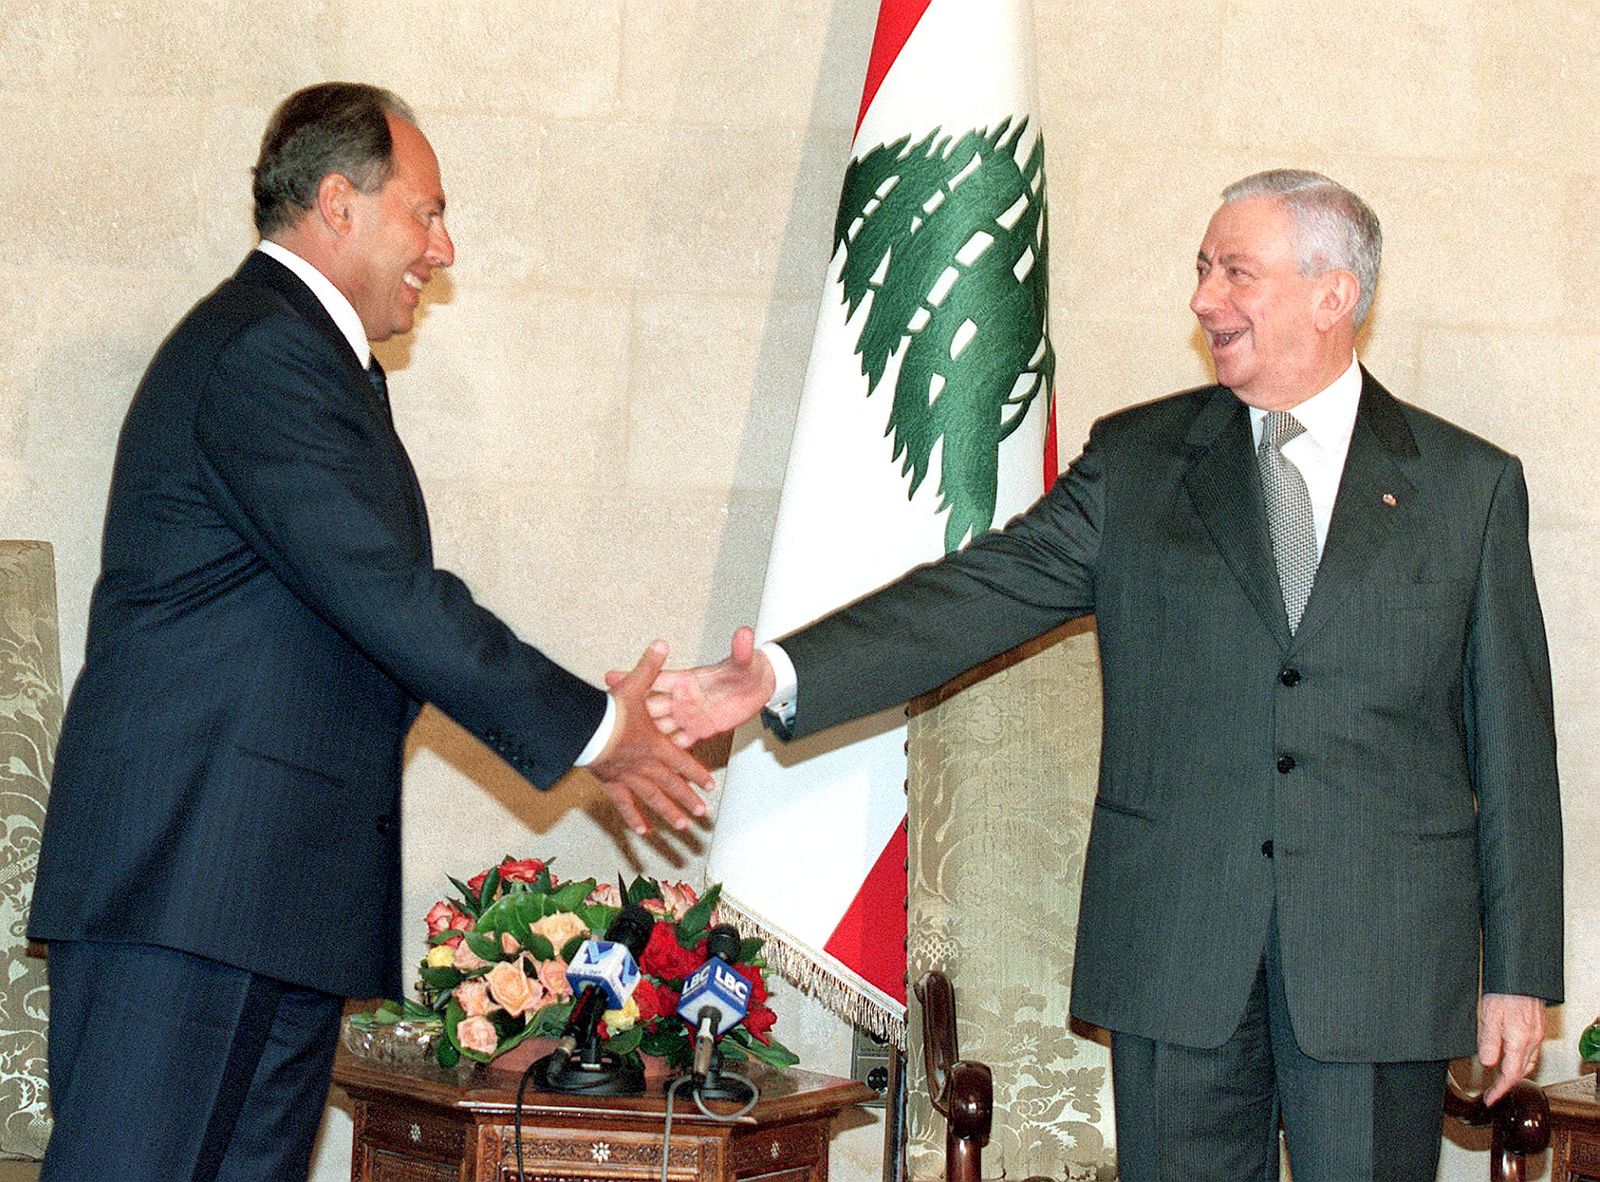 لحظة تسليم السلط بين الرئيس اللبناني المنتهية ولايته آنذاك إلياس الهراوي (يمين) والرئيس المنتخب إميل لحود بالقصر الرئاسي في بيروت- 15 أكتوبر 1998 - AFP